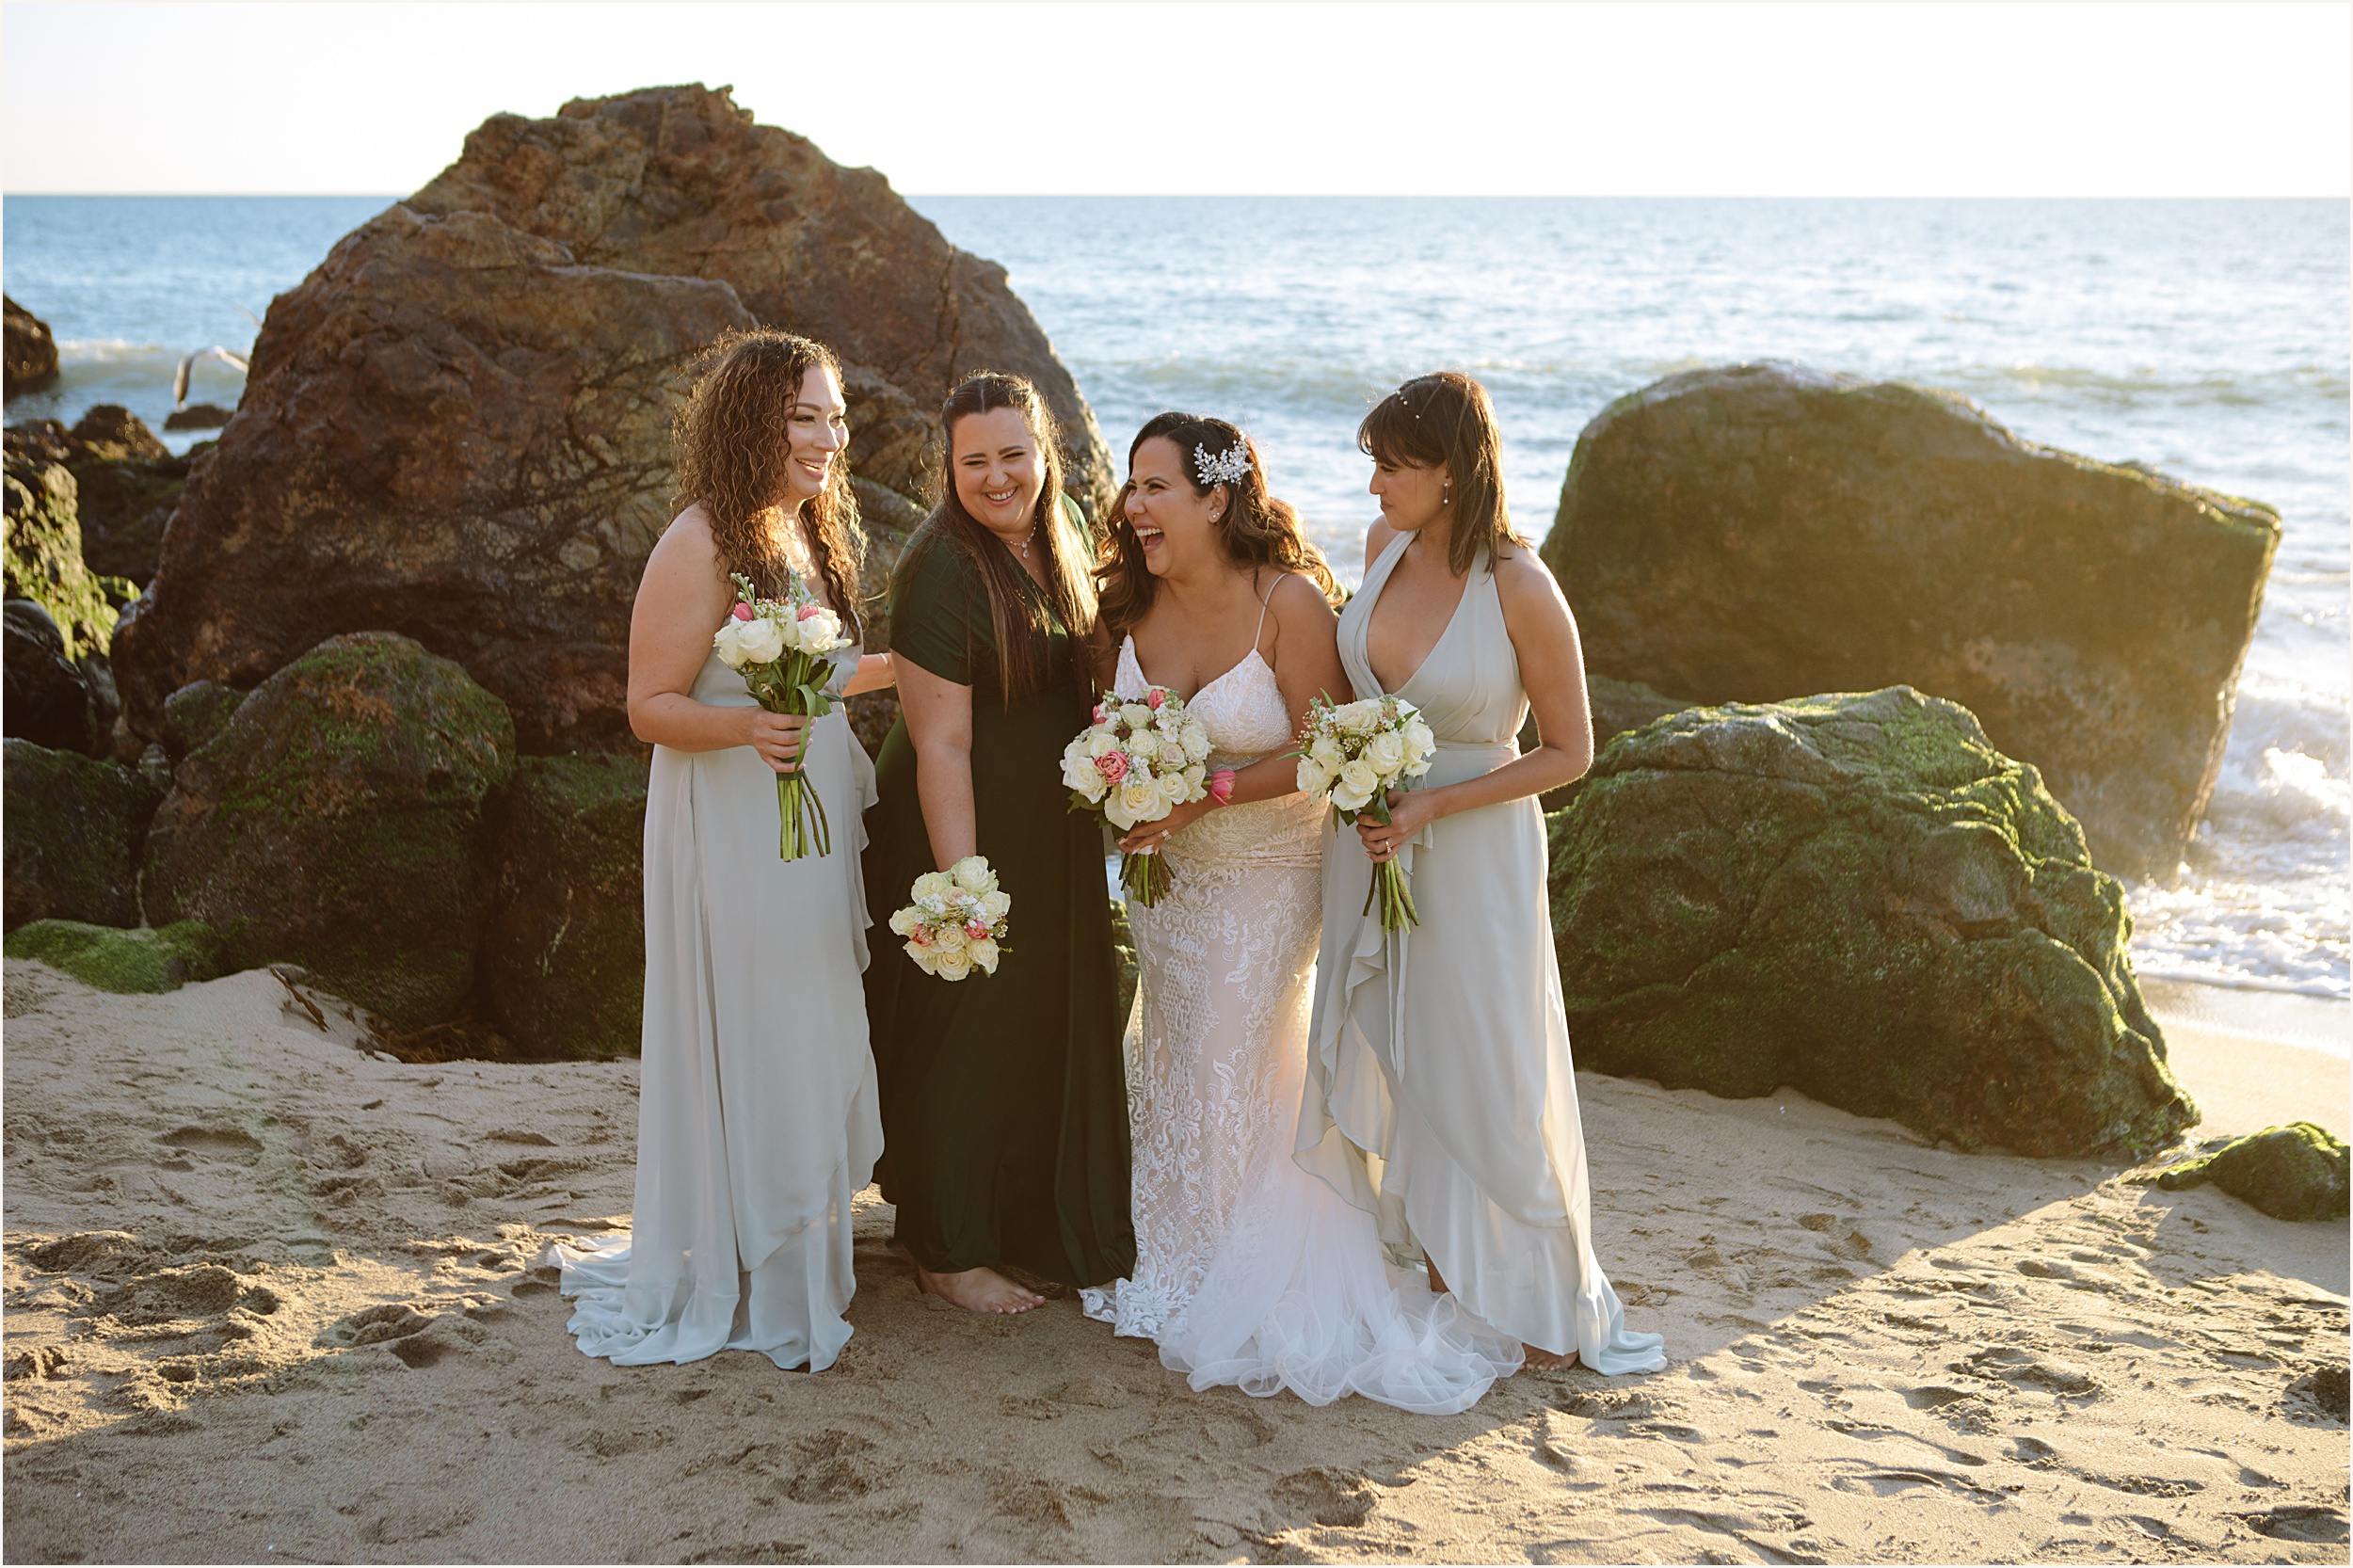 Karina-and-Santos-56 Malibu Beach Elopement with Friends | Karina & Santos￼